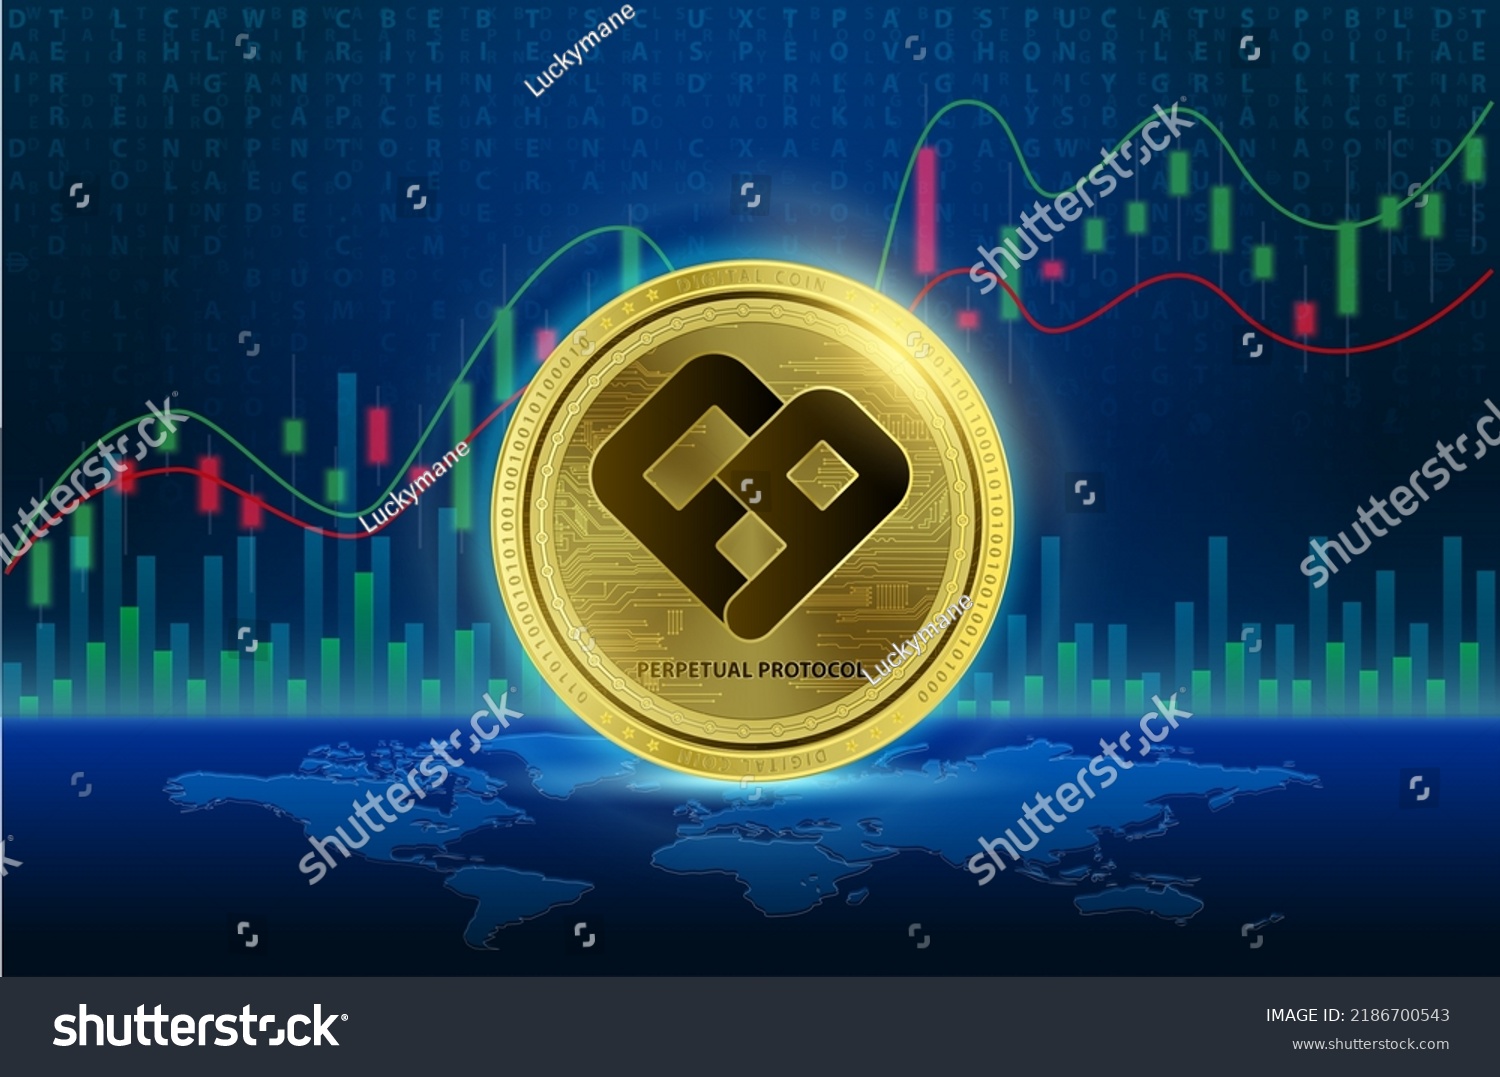 perp crypto coin